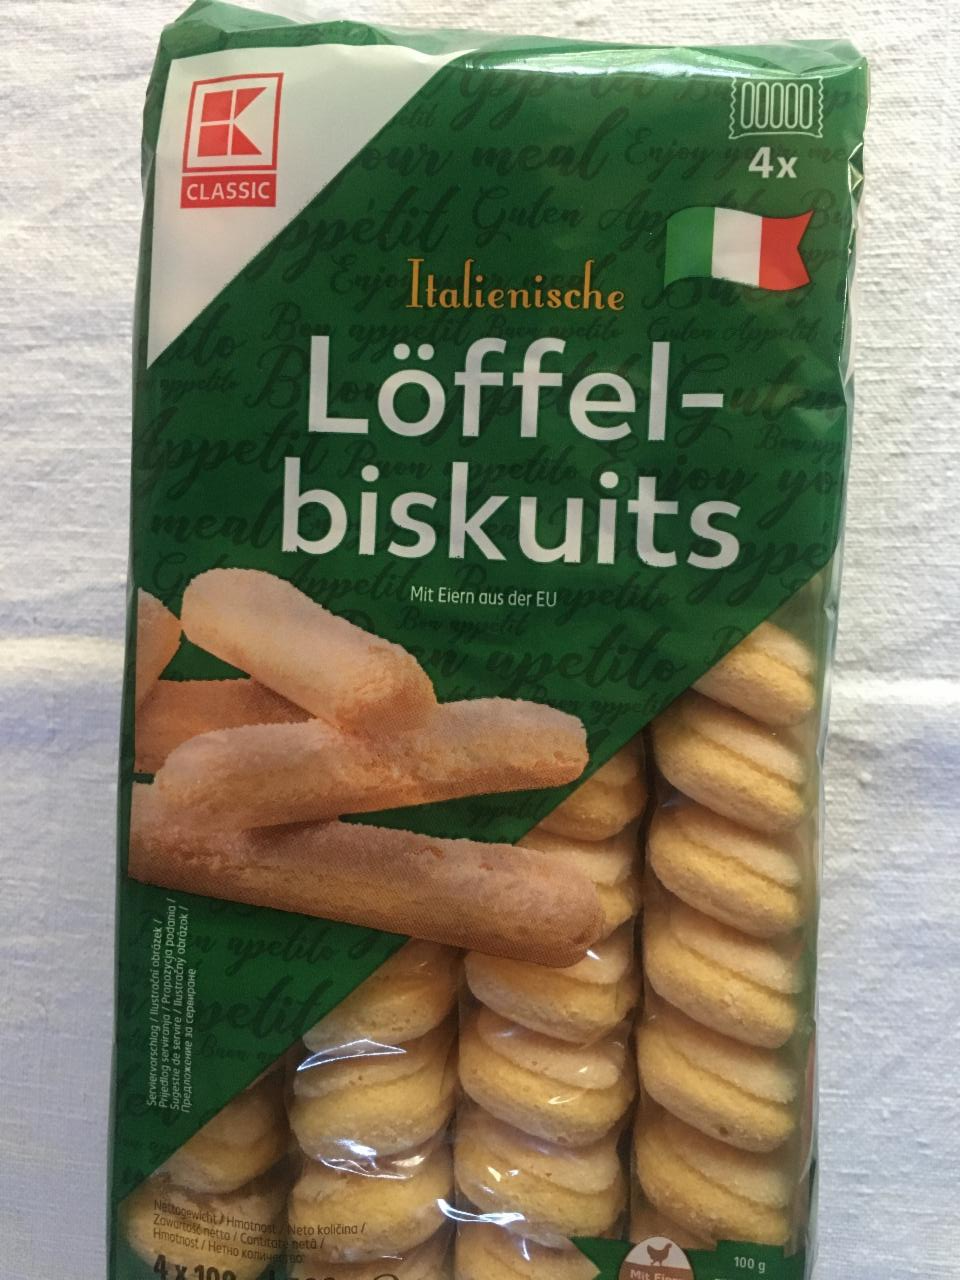 Fotografie - Italienische Löffel-biskuits K-Classic